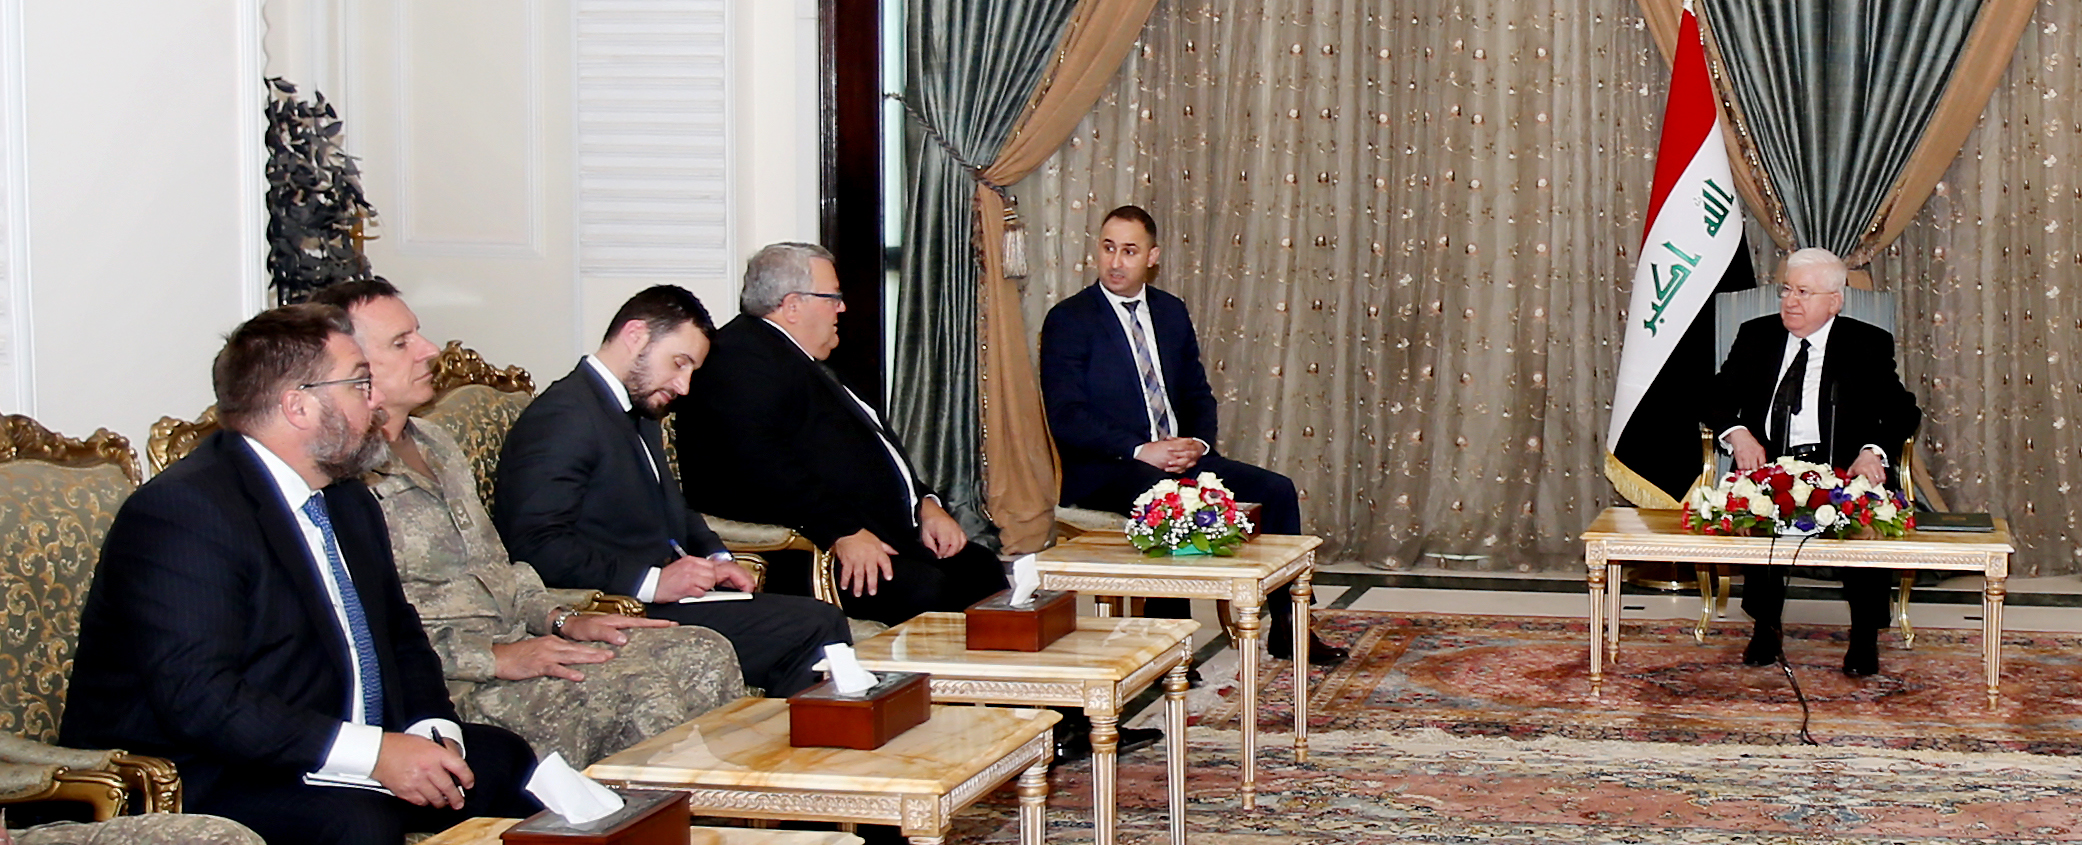 وزير الدفاع النيوزيلندي يؤكد استعداد بلاده لتطوير تعاونها مع العراق